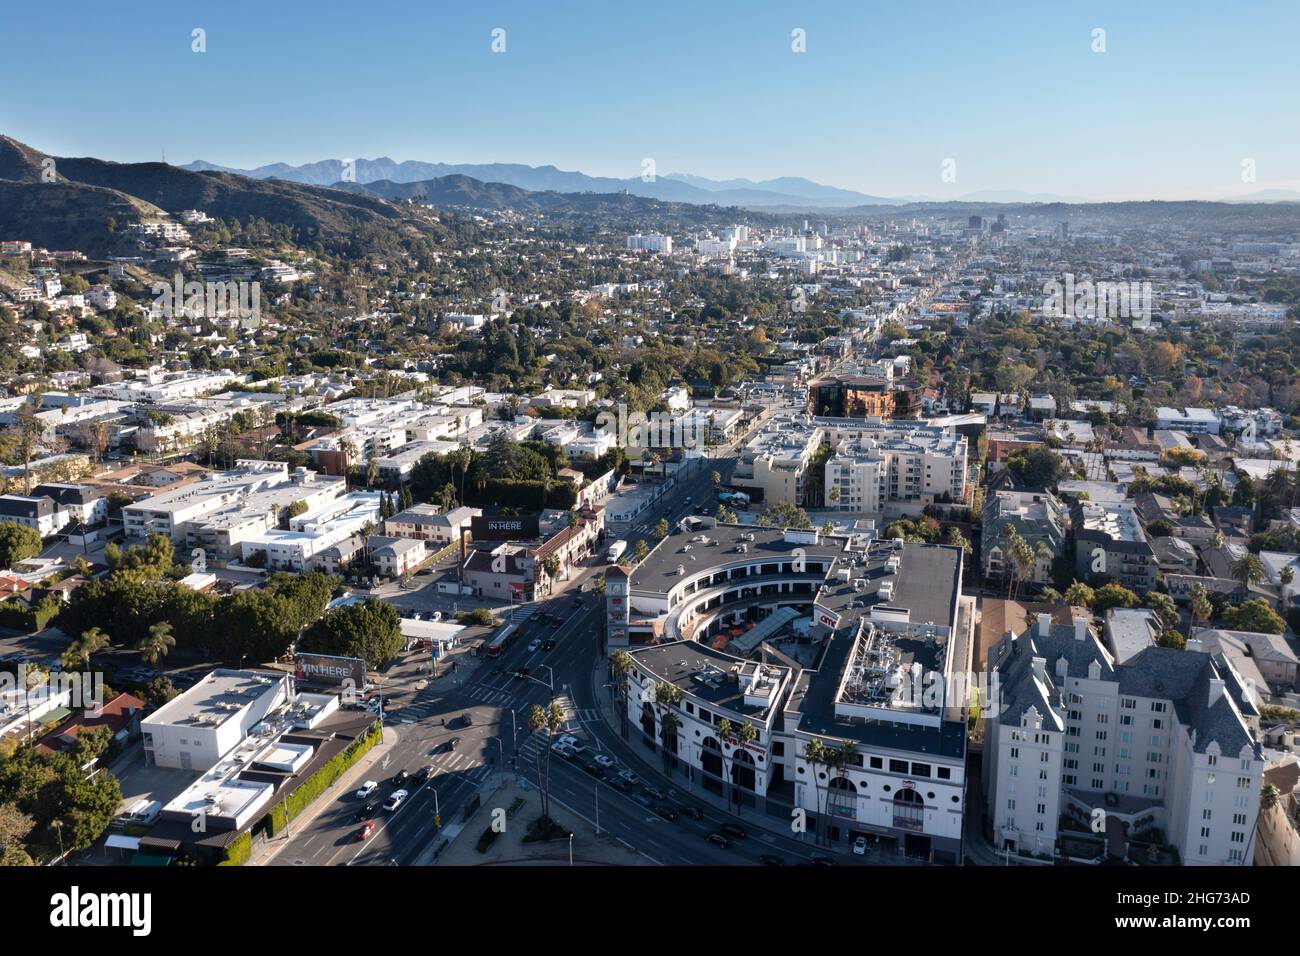 Por encima de Sunset Boulevard en West Hollywood mirando hacia el este en una tarde despejada Foto de stock